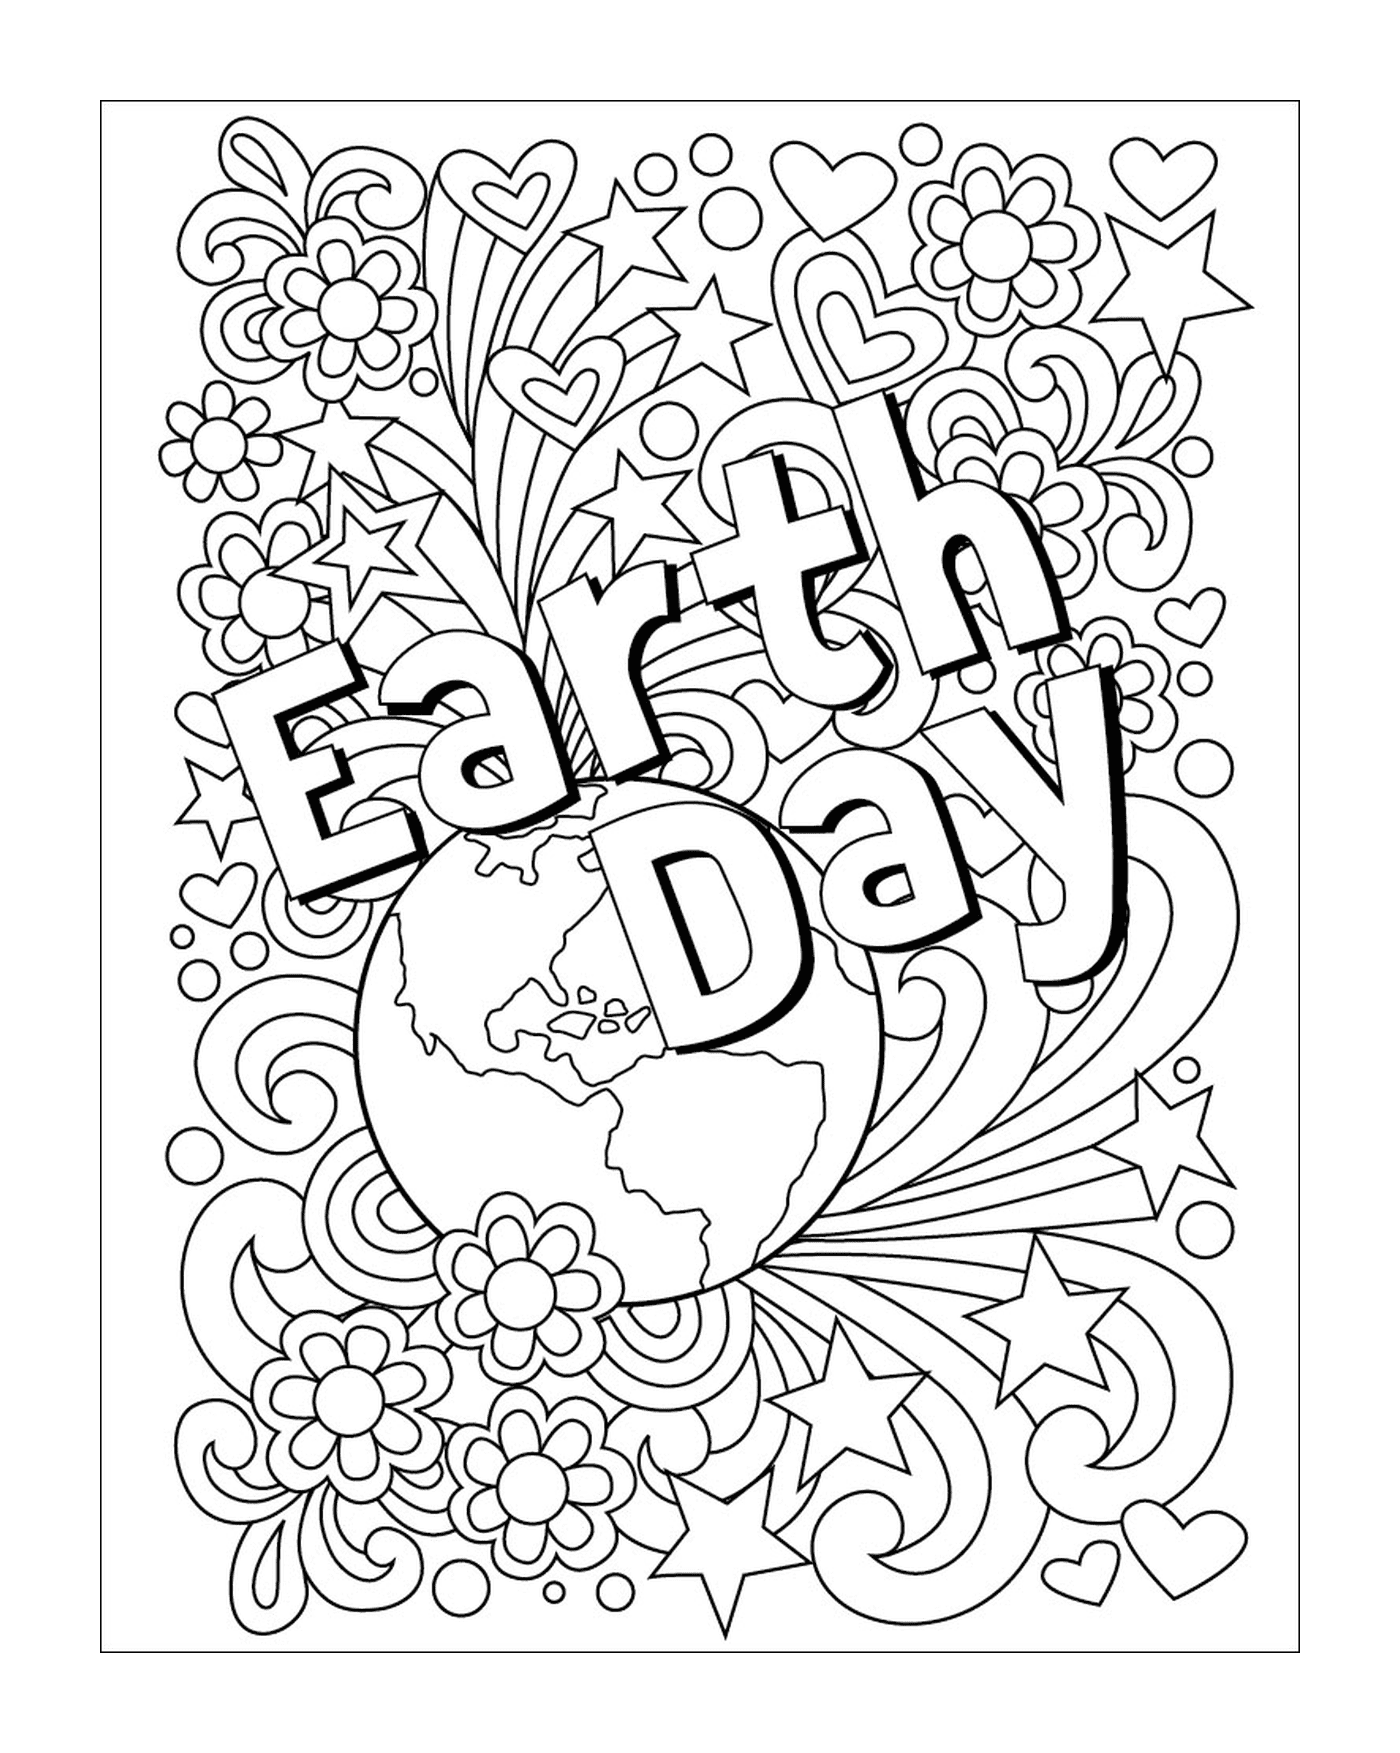  Giornata degli adulti per la Terra, i fiori e il globo 